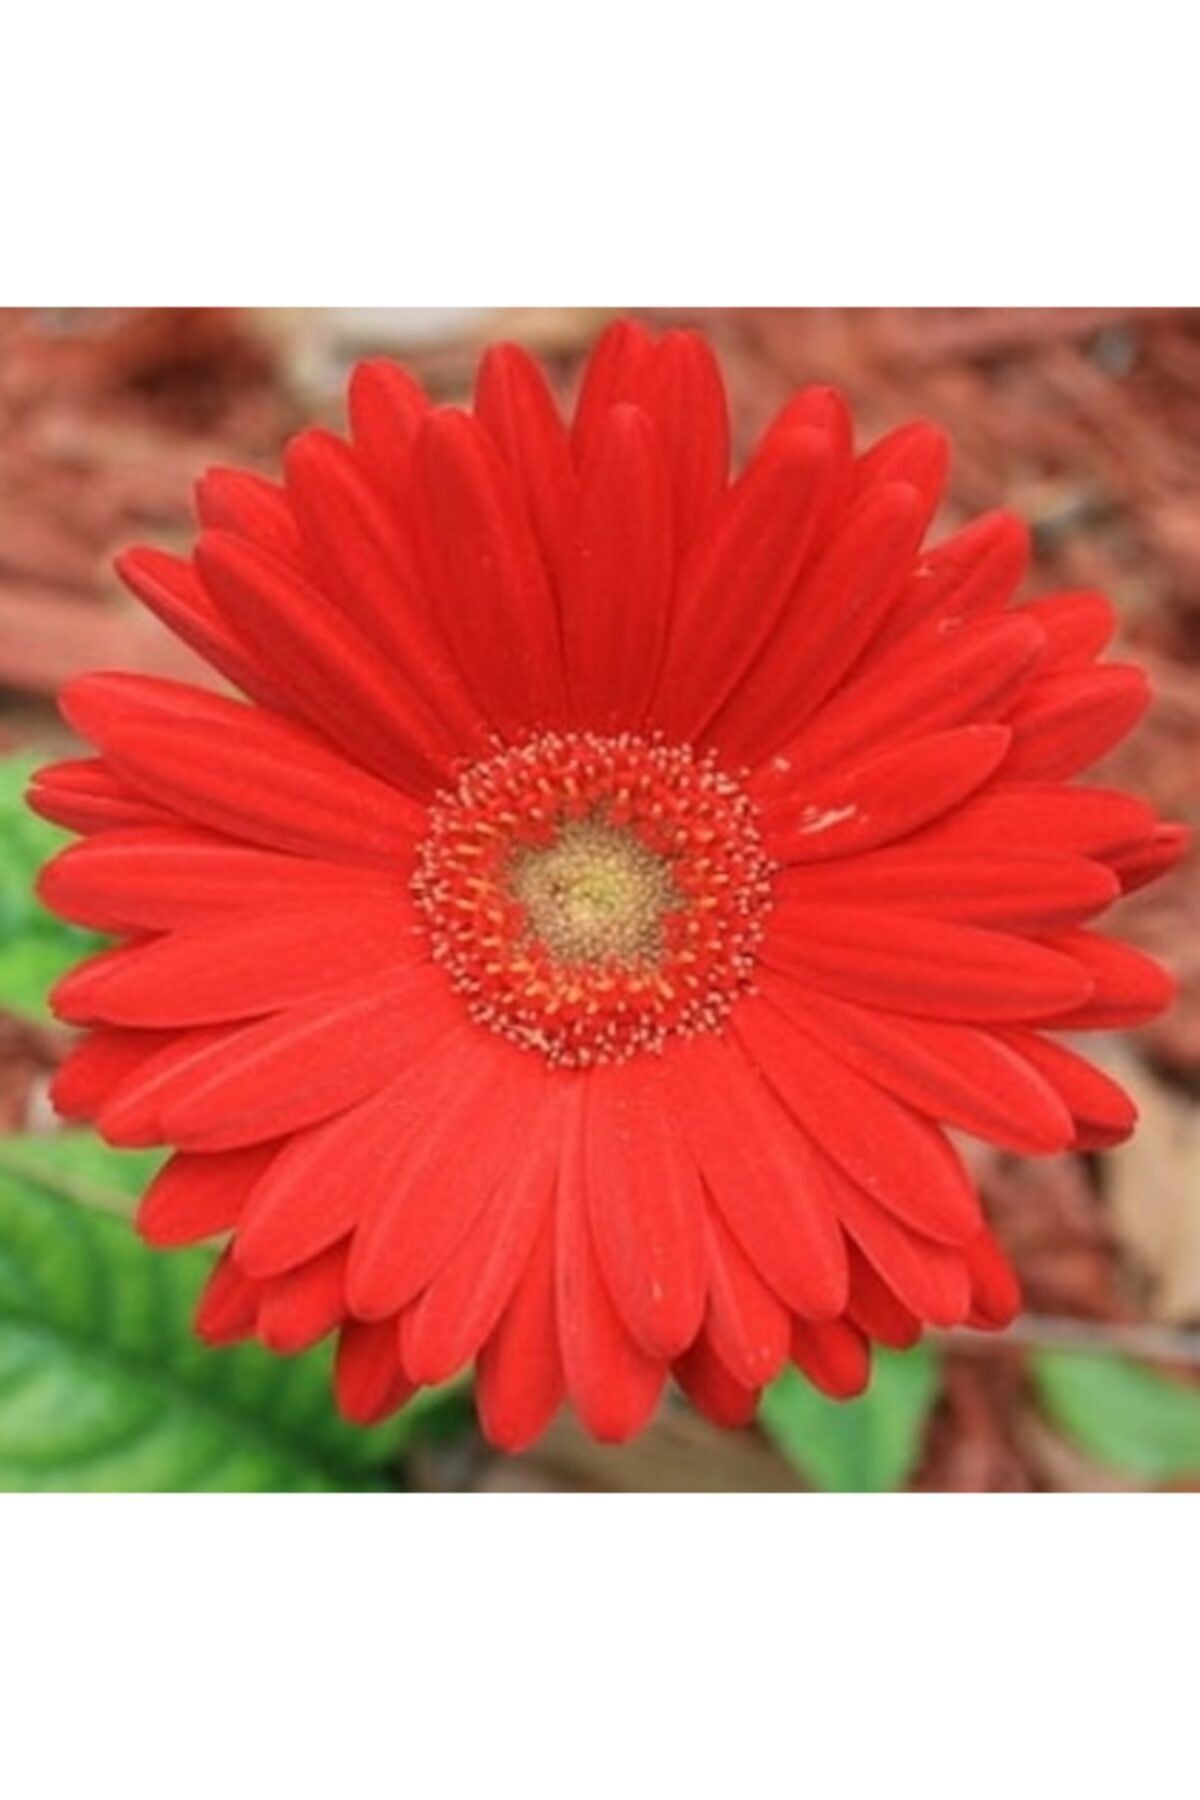 CAYKA 25 Adet Kırmızı Renk Gerbera Çiçeği Tohum + 10 Adet  Karışık Renk Lale Çiçek Tohumu